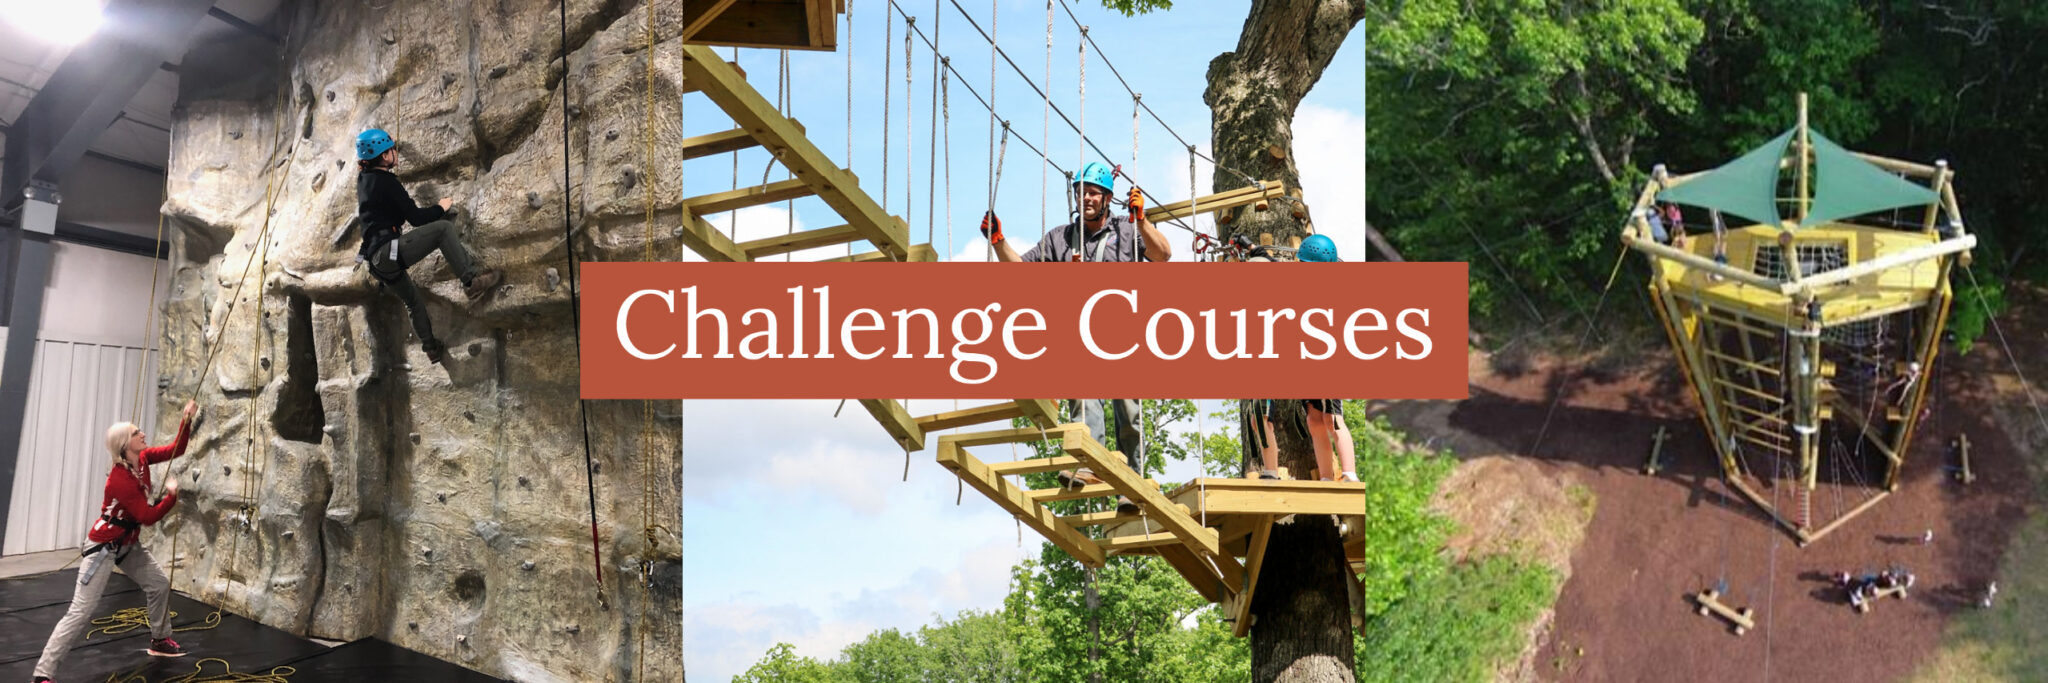 Challenge Courses